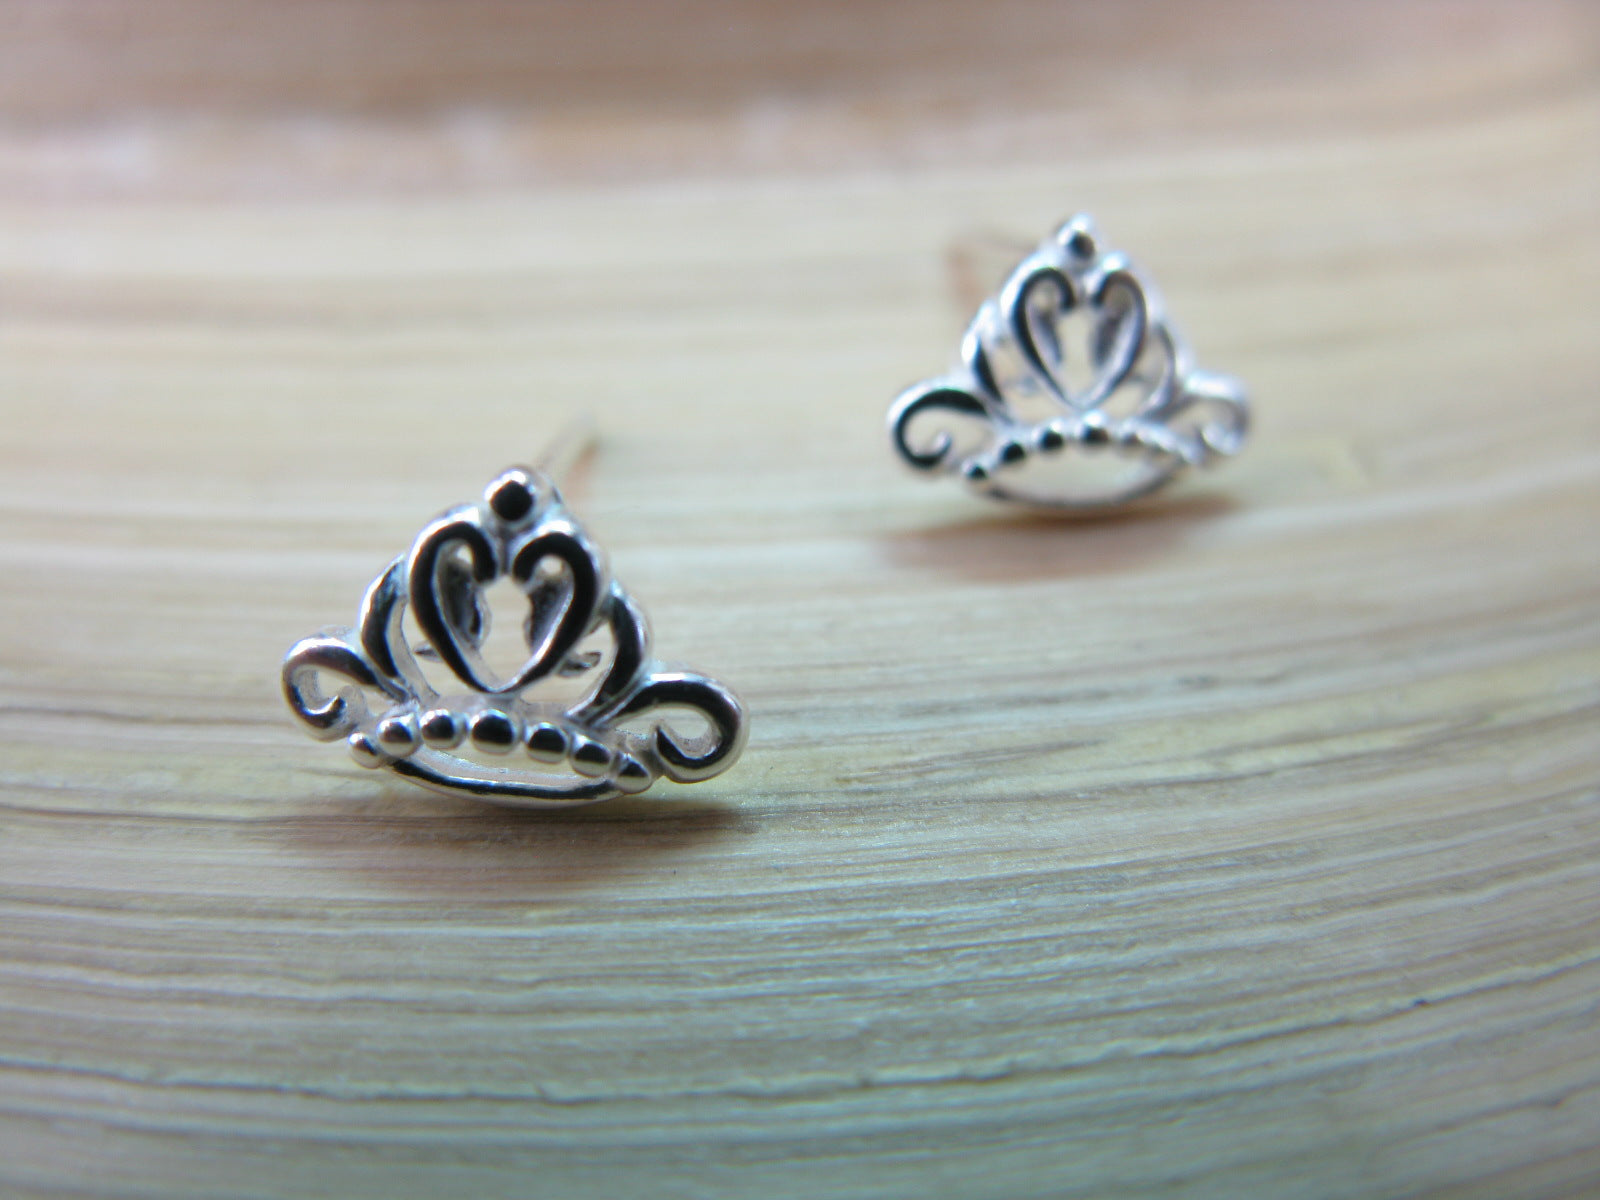 Crown Stud Earrings in 925 Sterling Silver